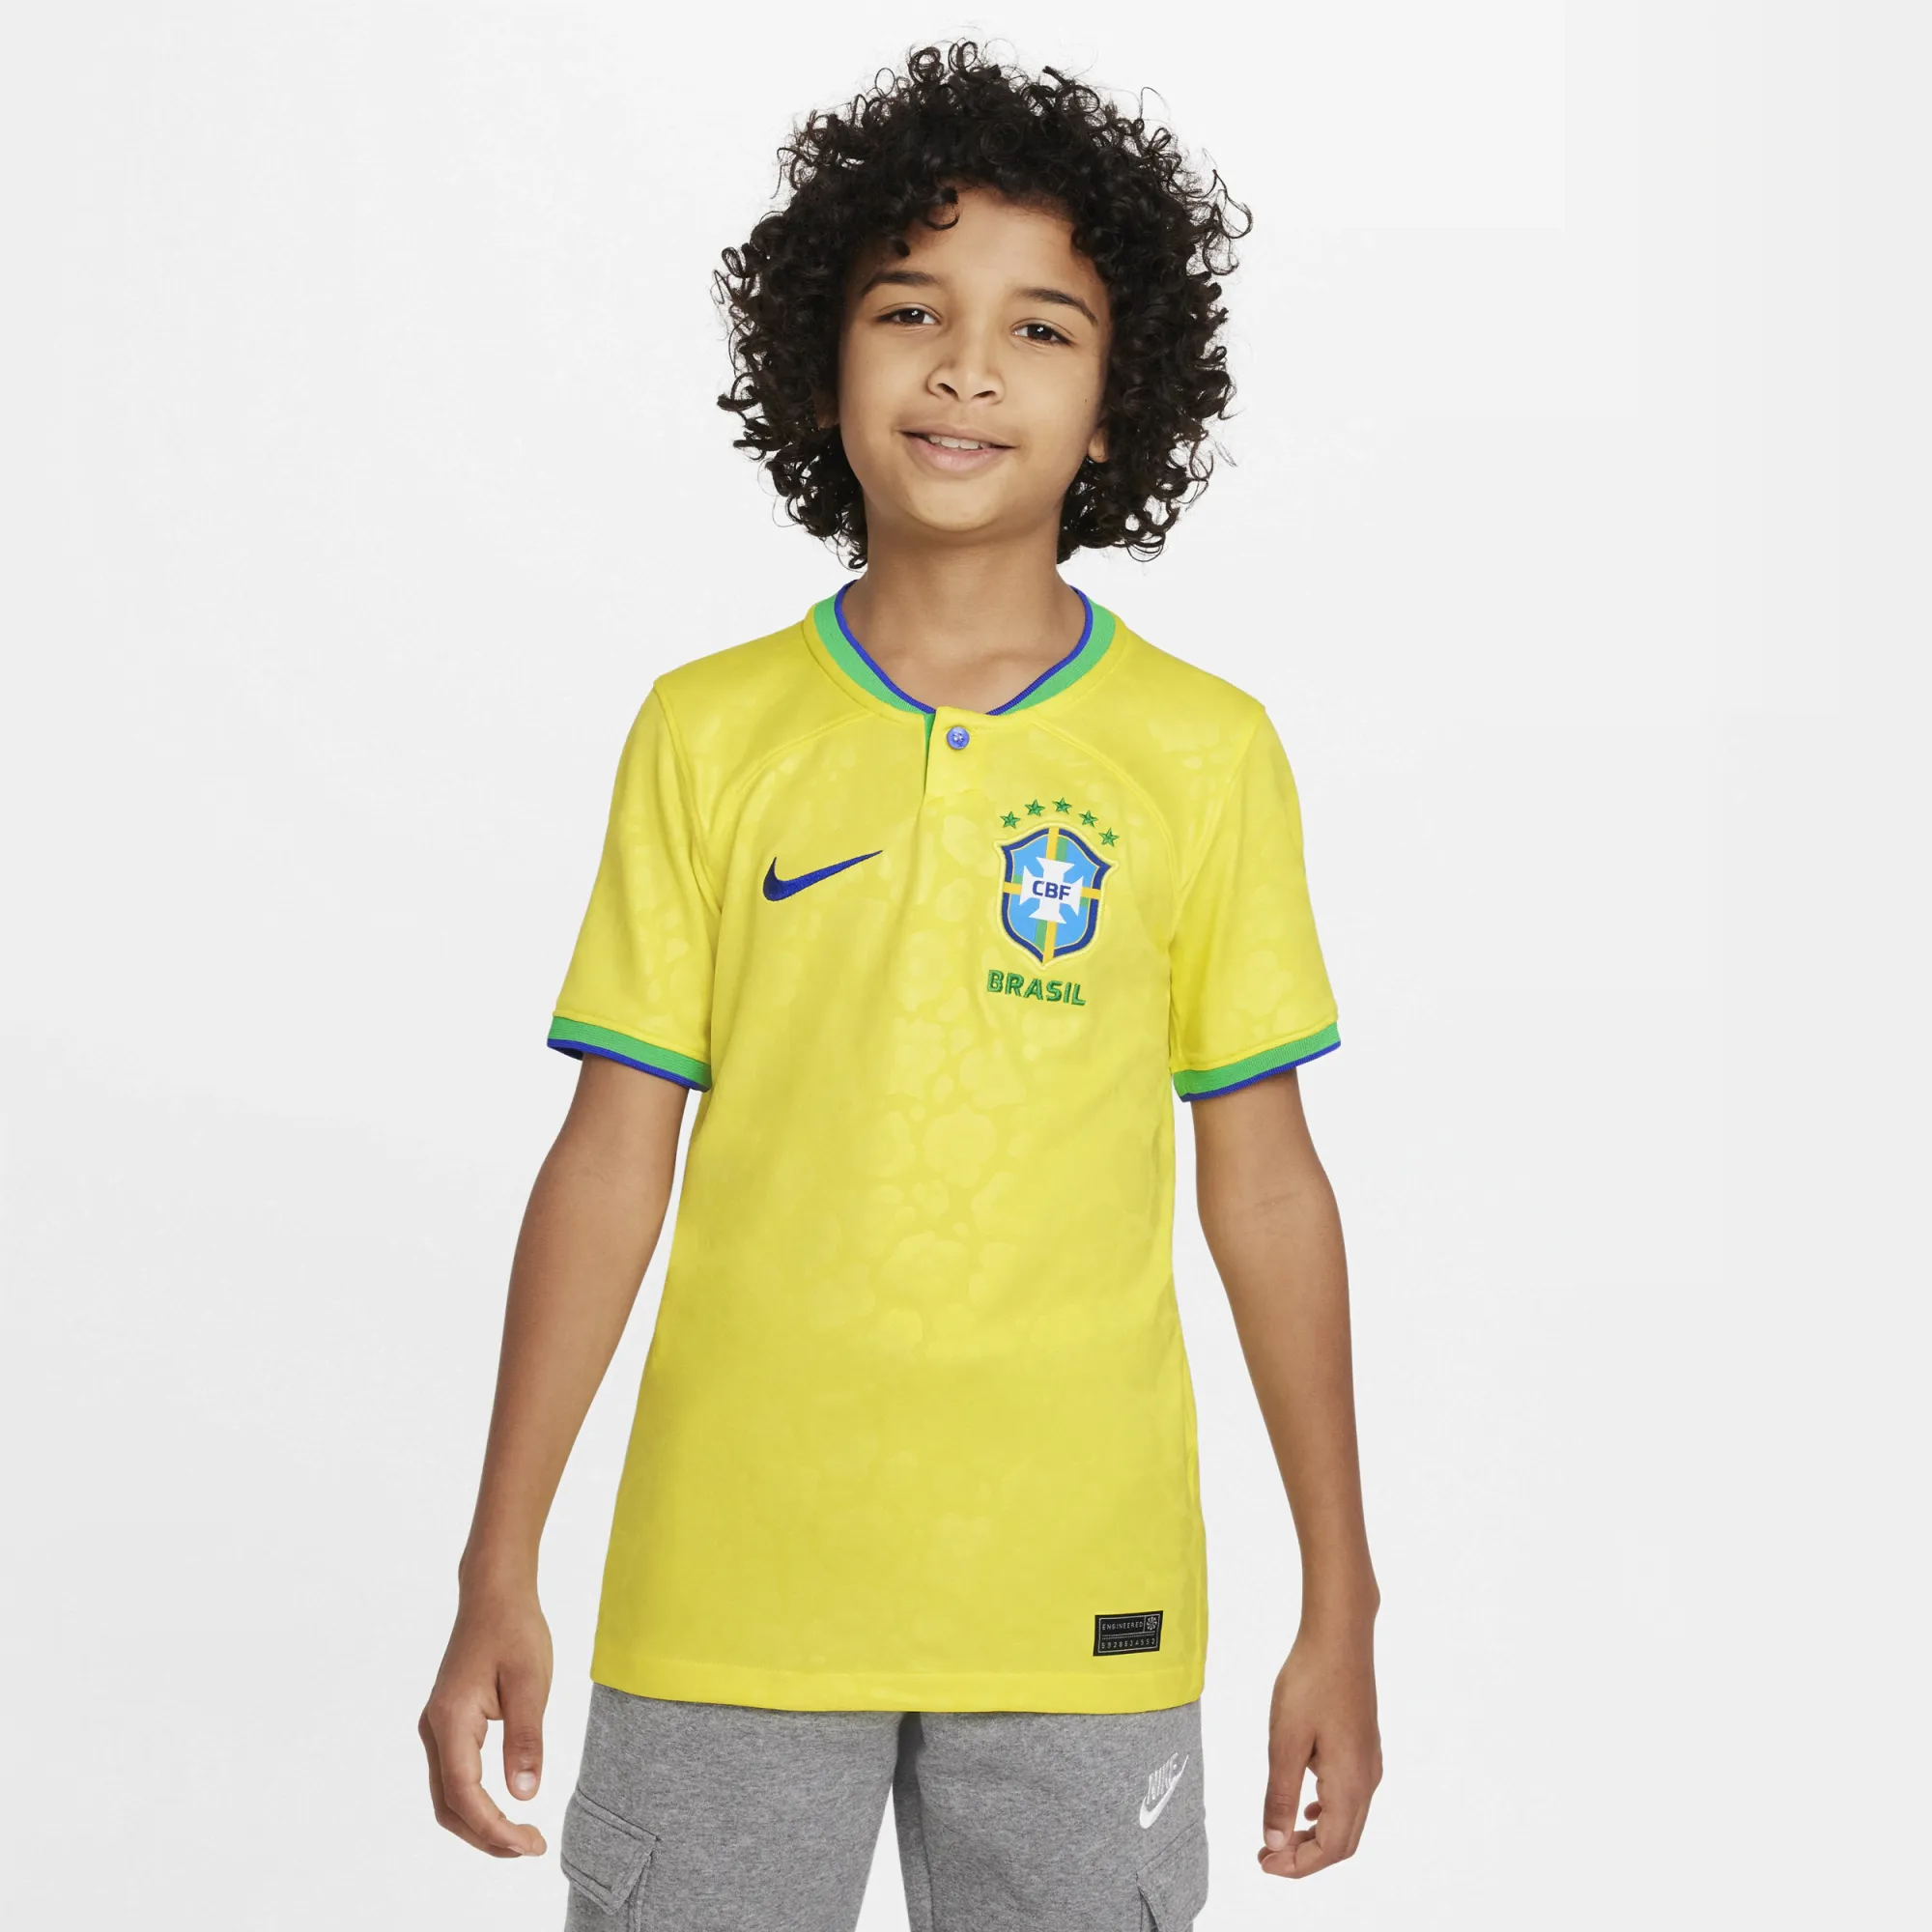 brazil football shirt children's